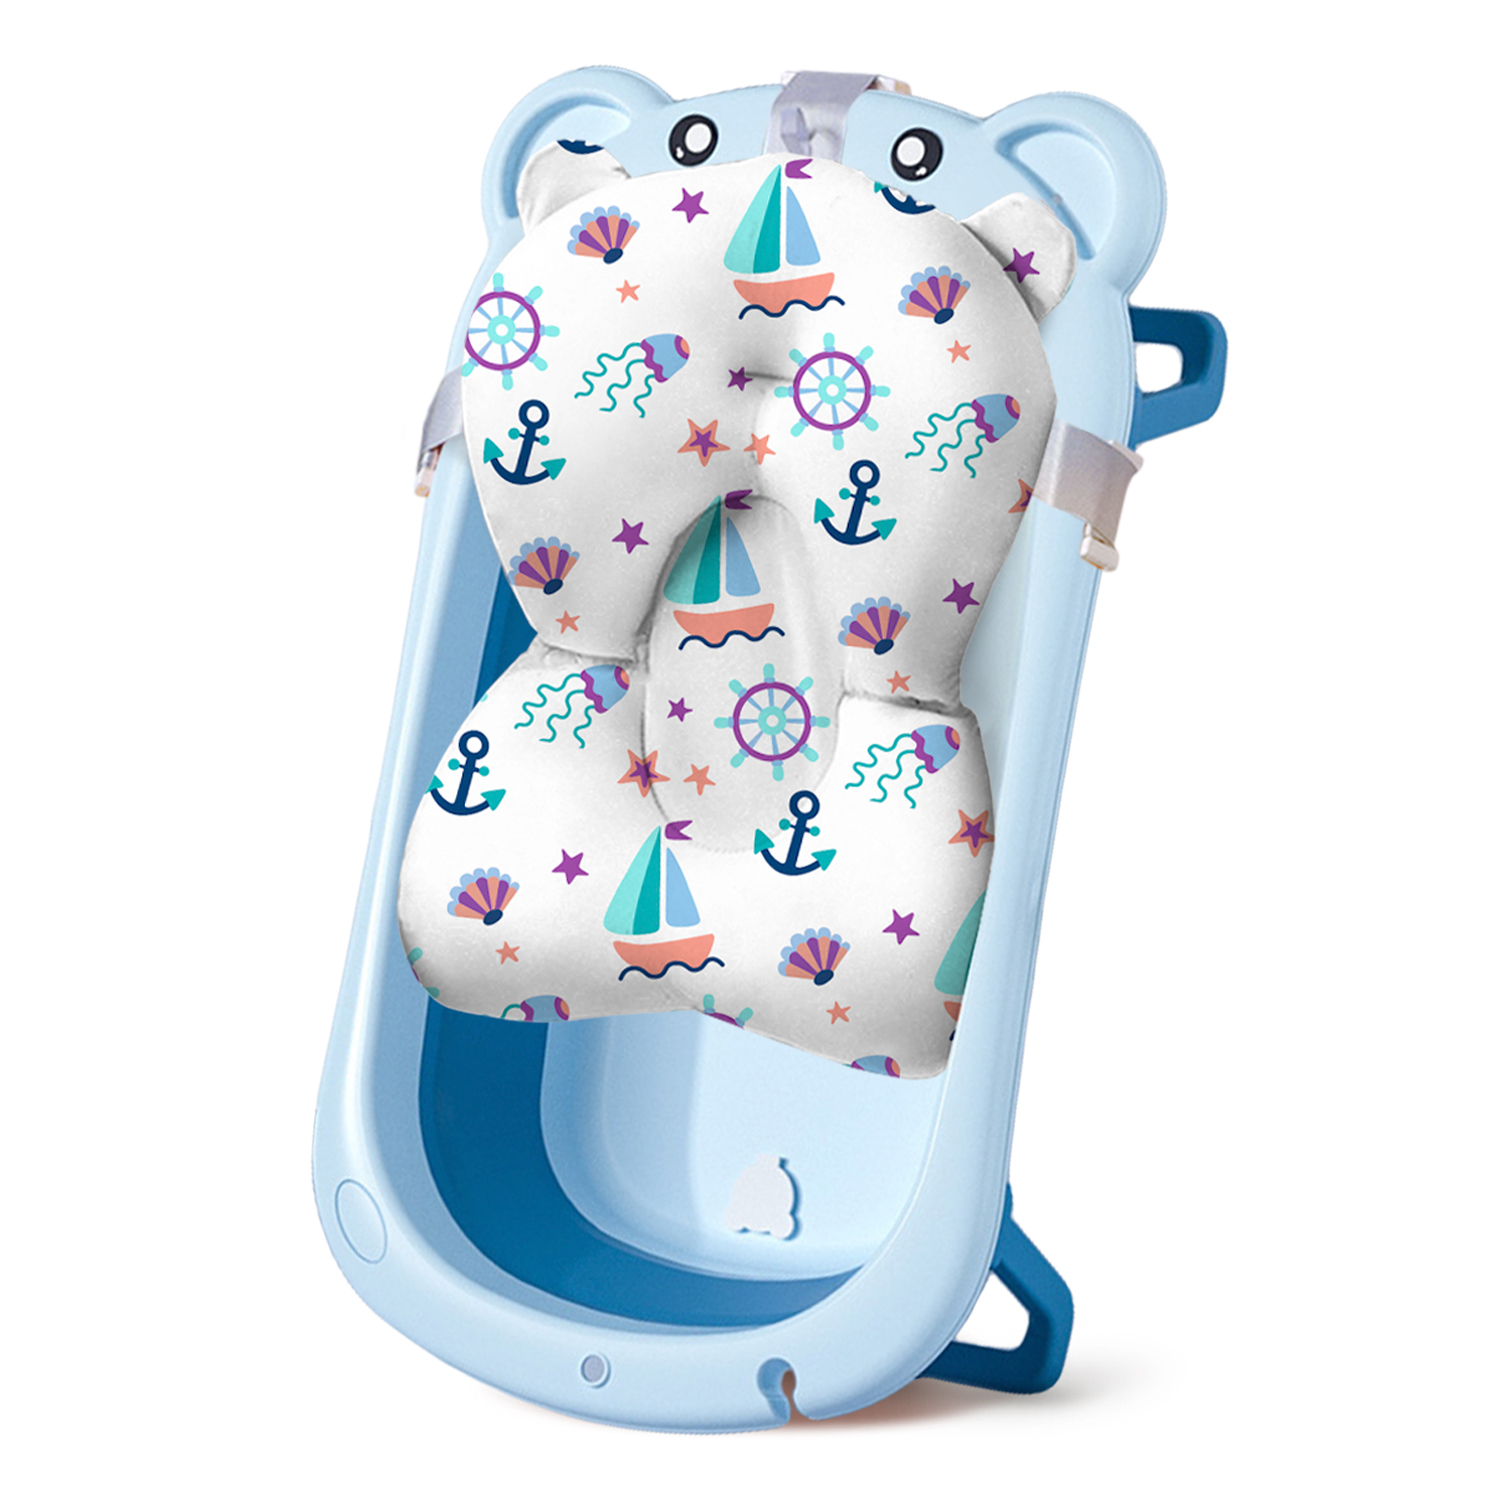 Ванночка для новорожденных LaLa-Kids складная с матрасиком ярко-голубым в комплекте - фото 1